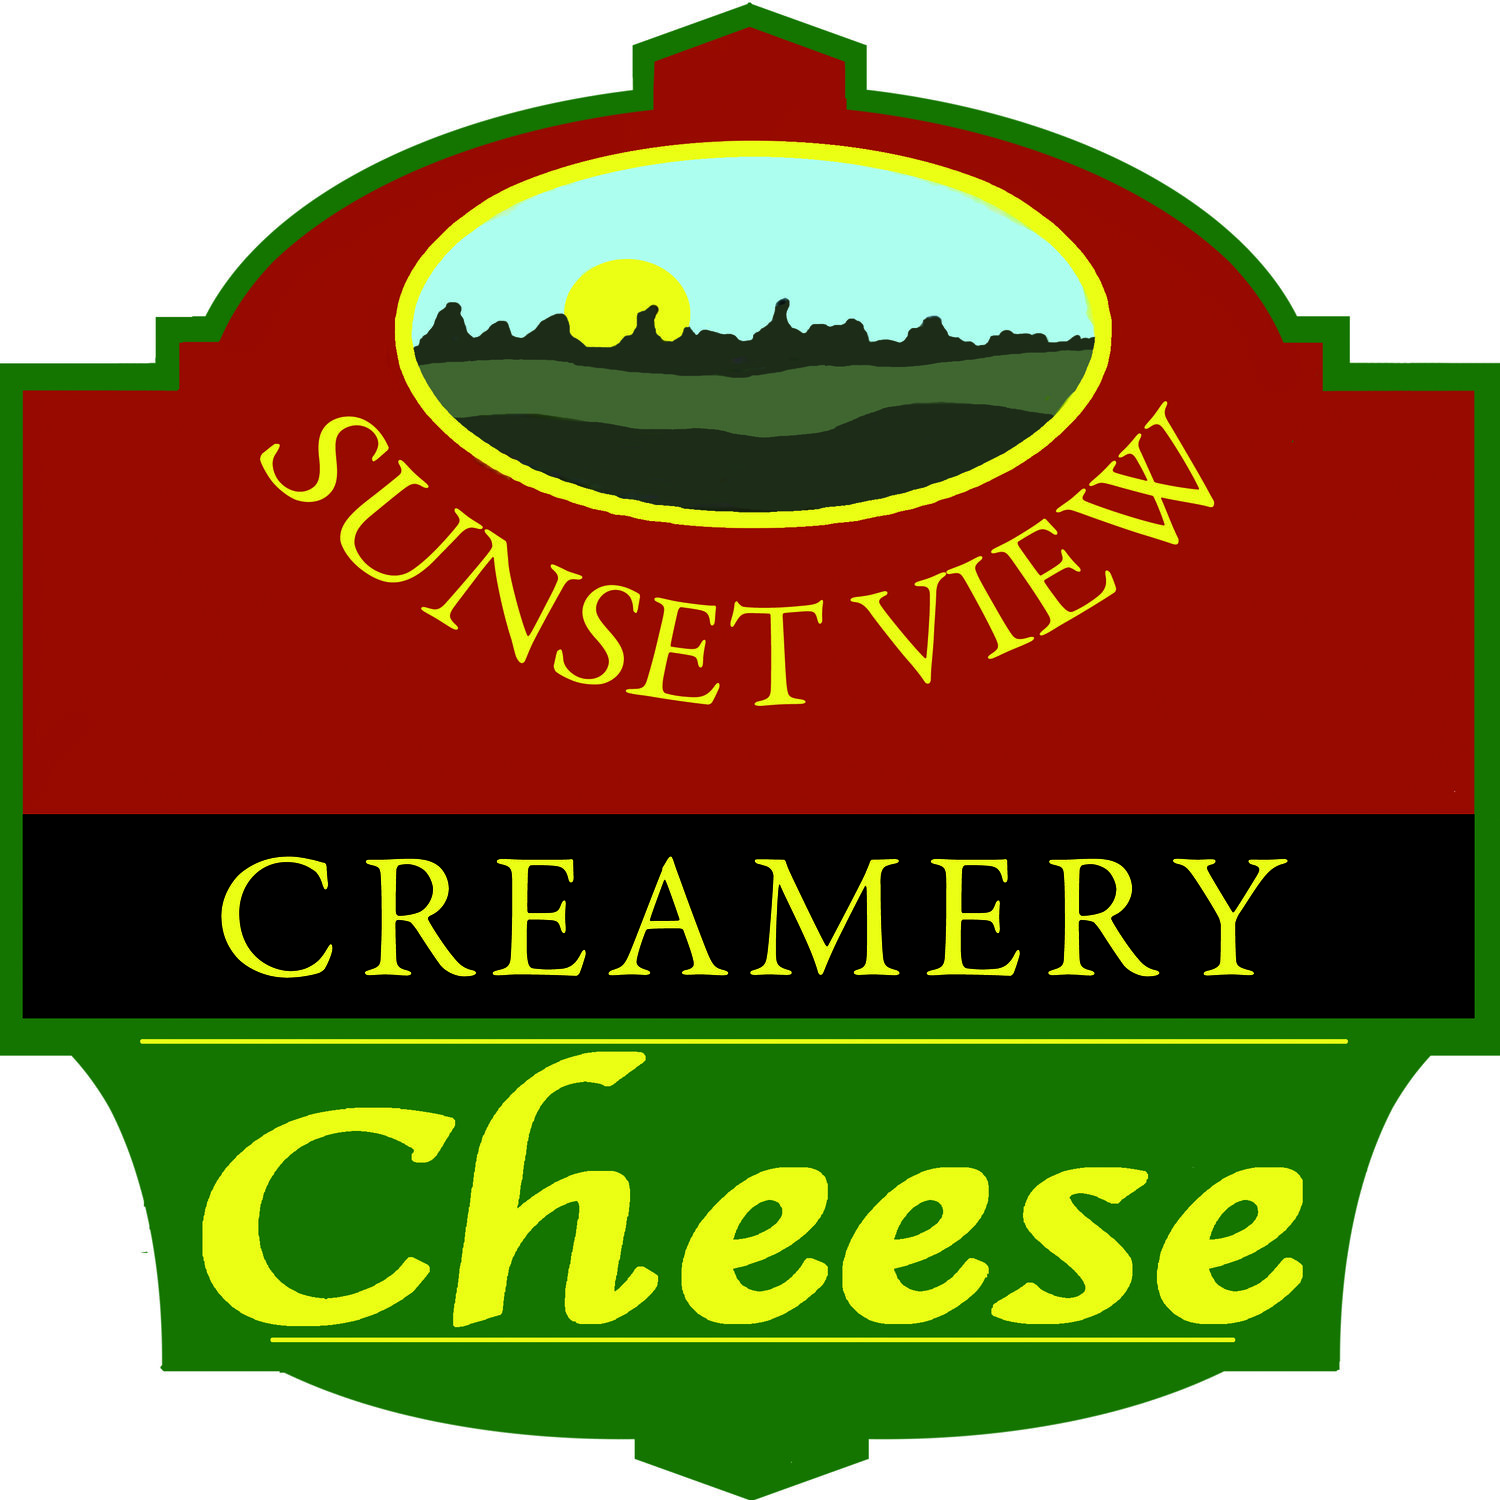 Sunset View Creamery